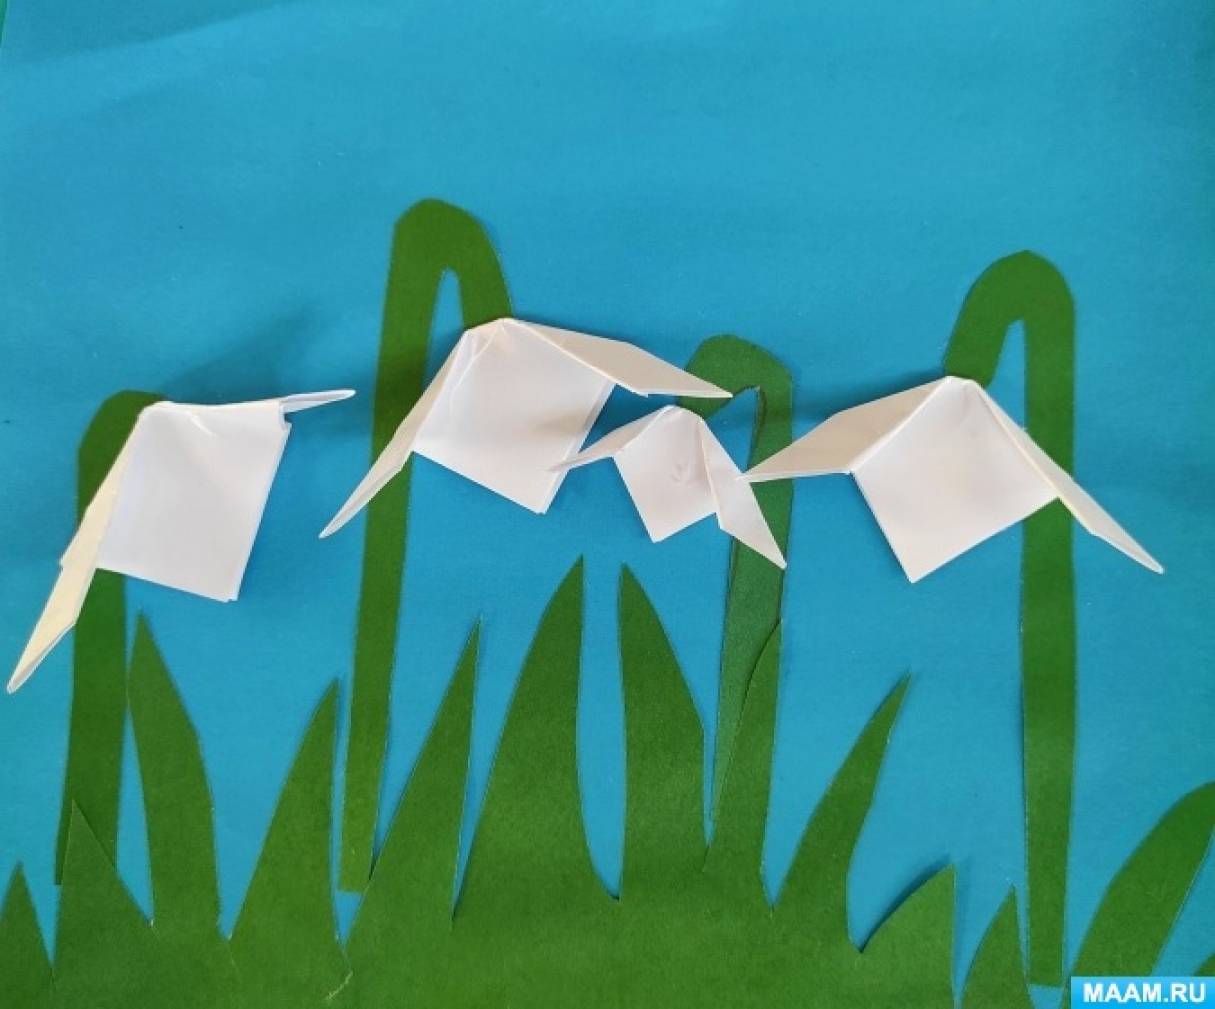 Мастер-класс для детей по аппликации из цветной бумаги с элементами оригами «Подснежники»